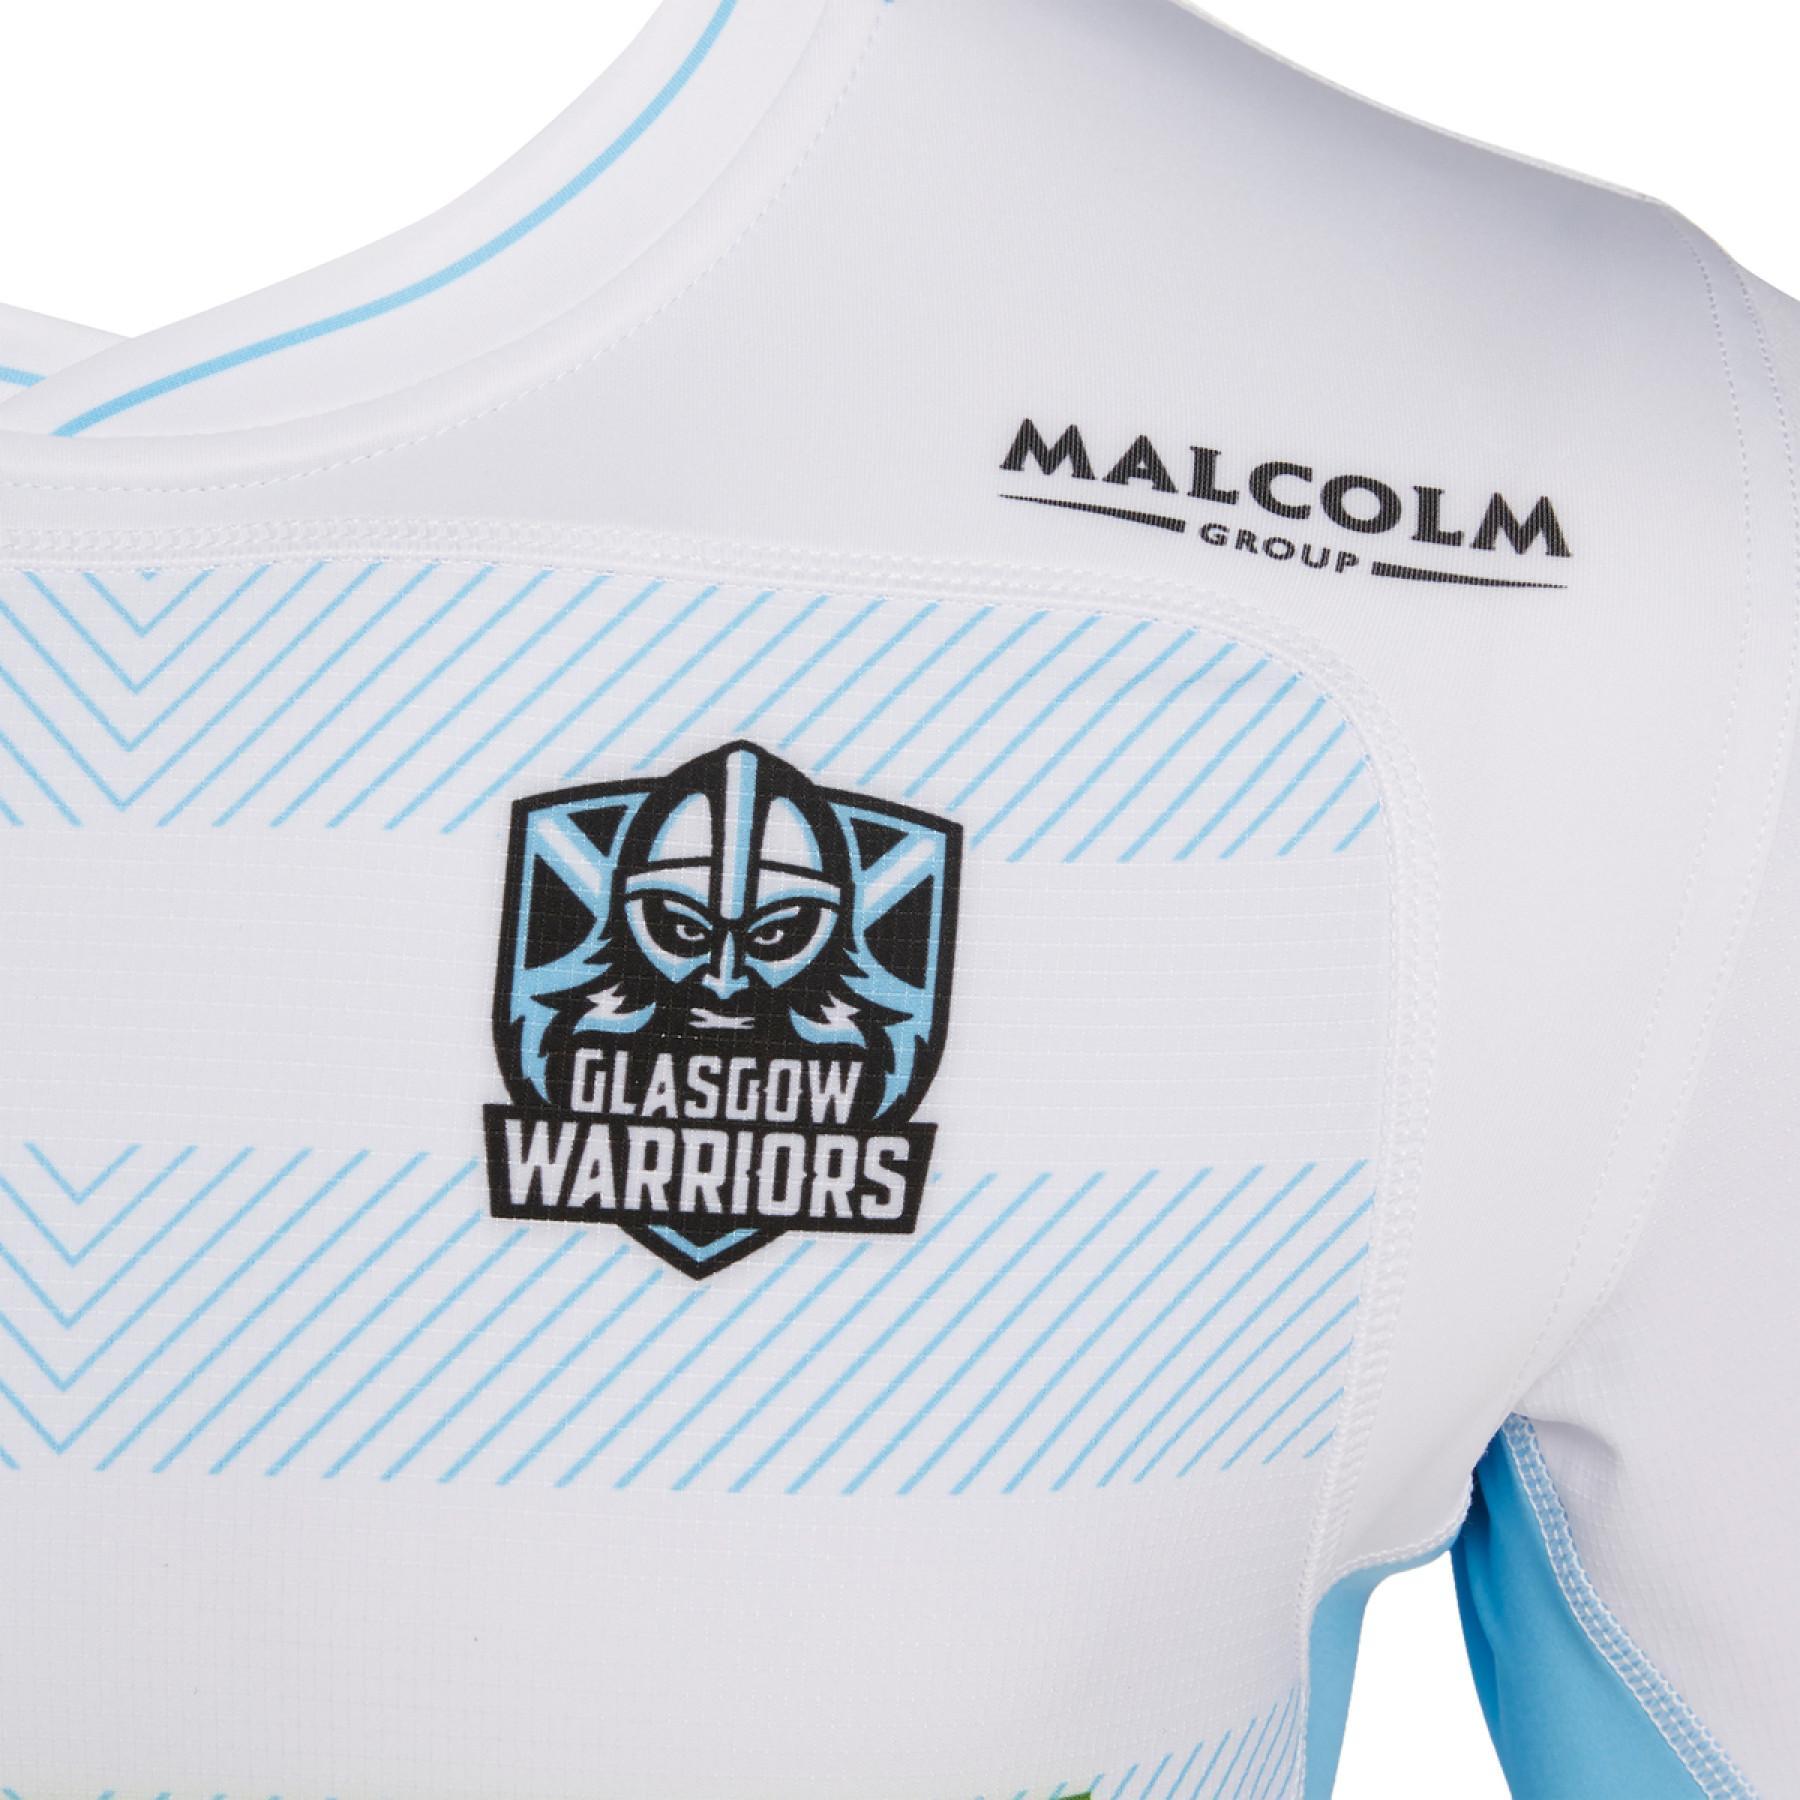 Autentyczna koszulka outdoorowa Glasgow Warriors 2019/2020